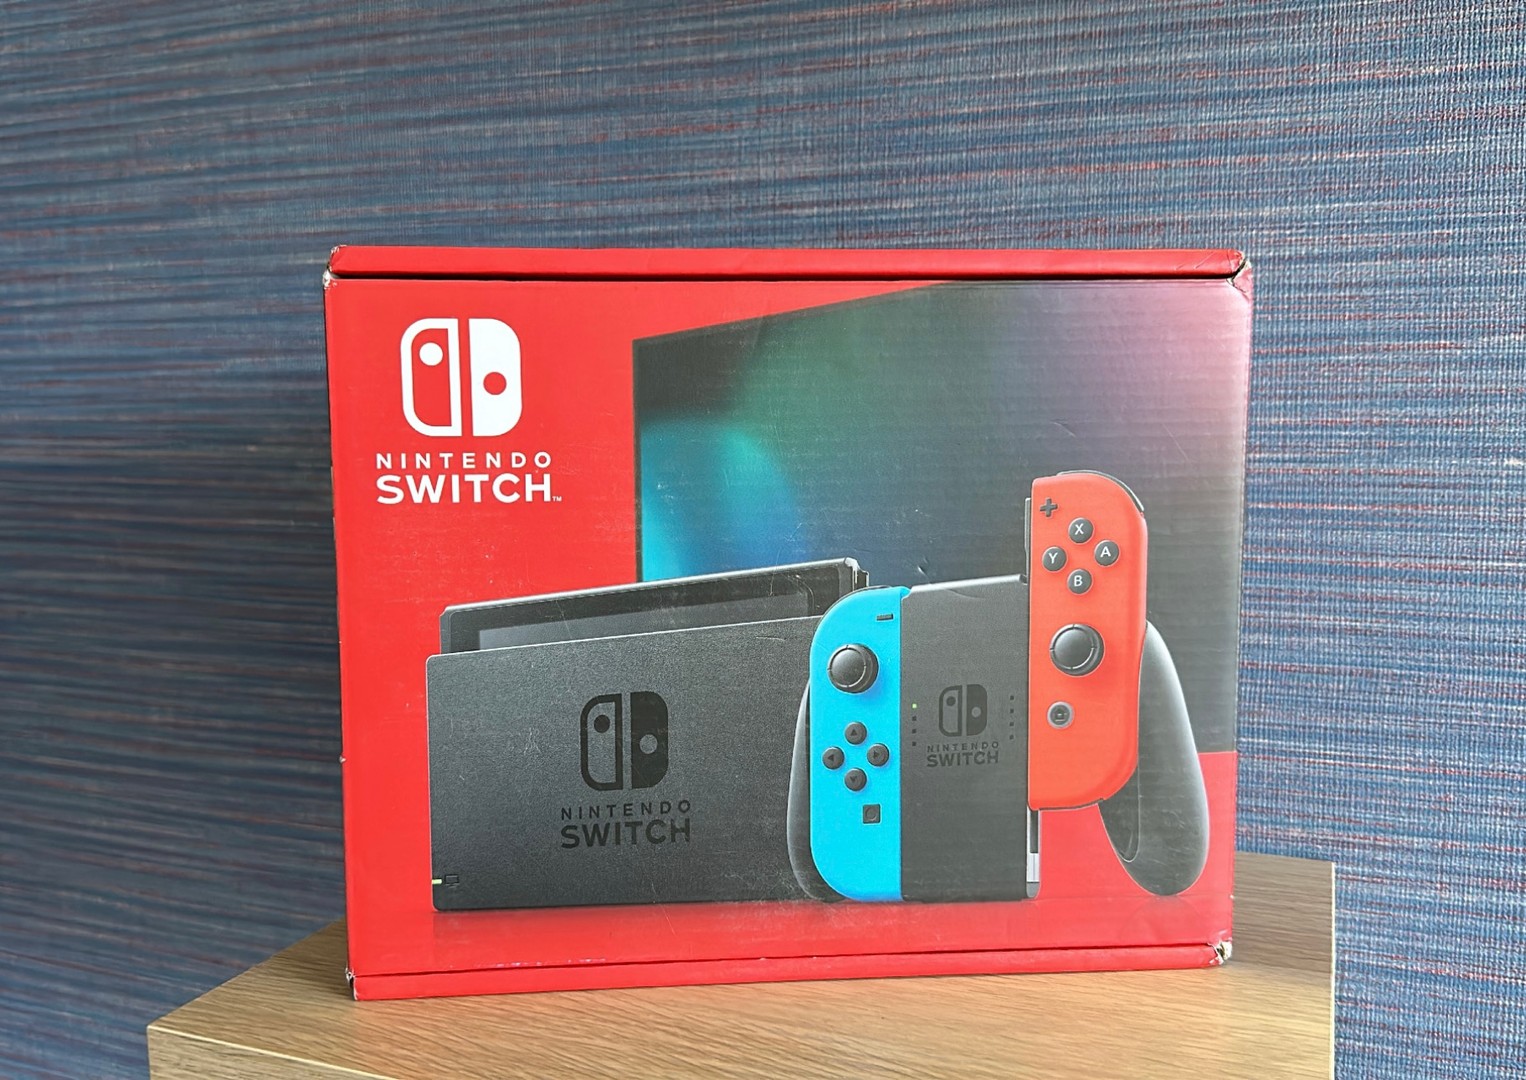 Vendo Consola Nintendo Switch Version Mejorada Nuevos Sellados, RD$ 18,200 NEG